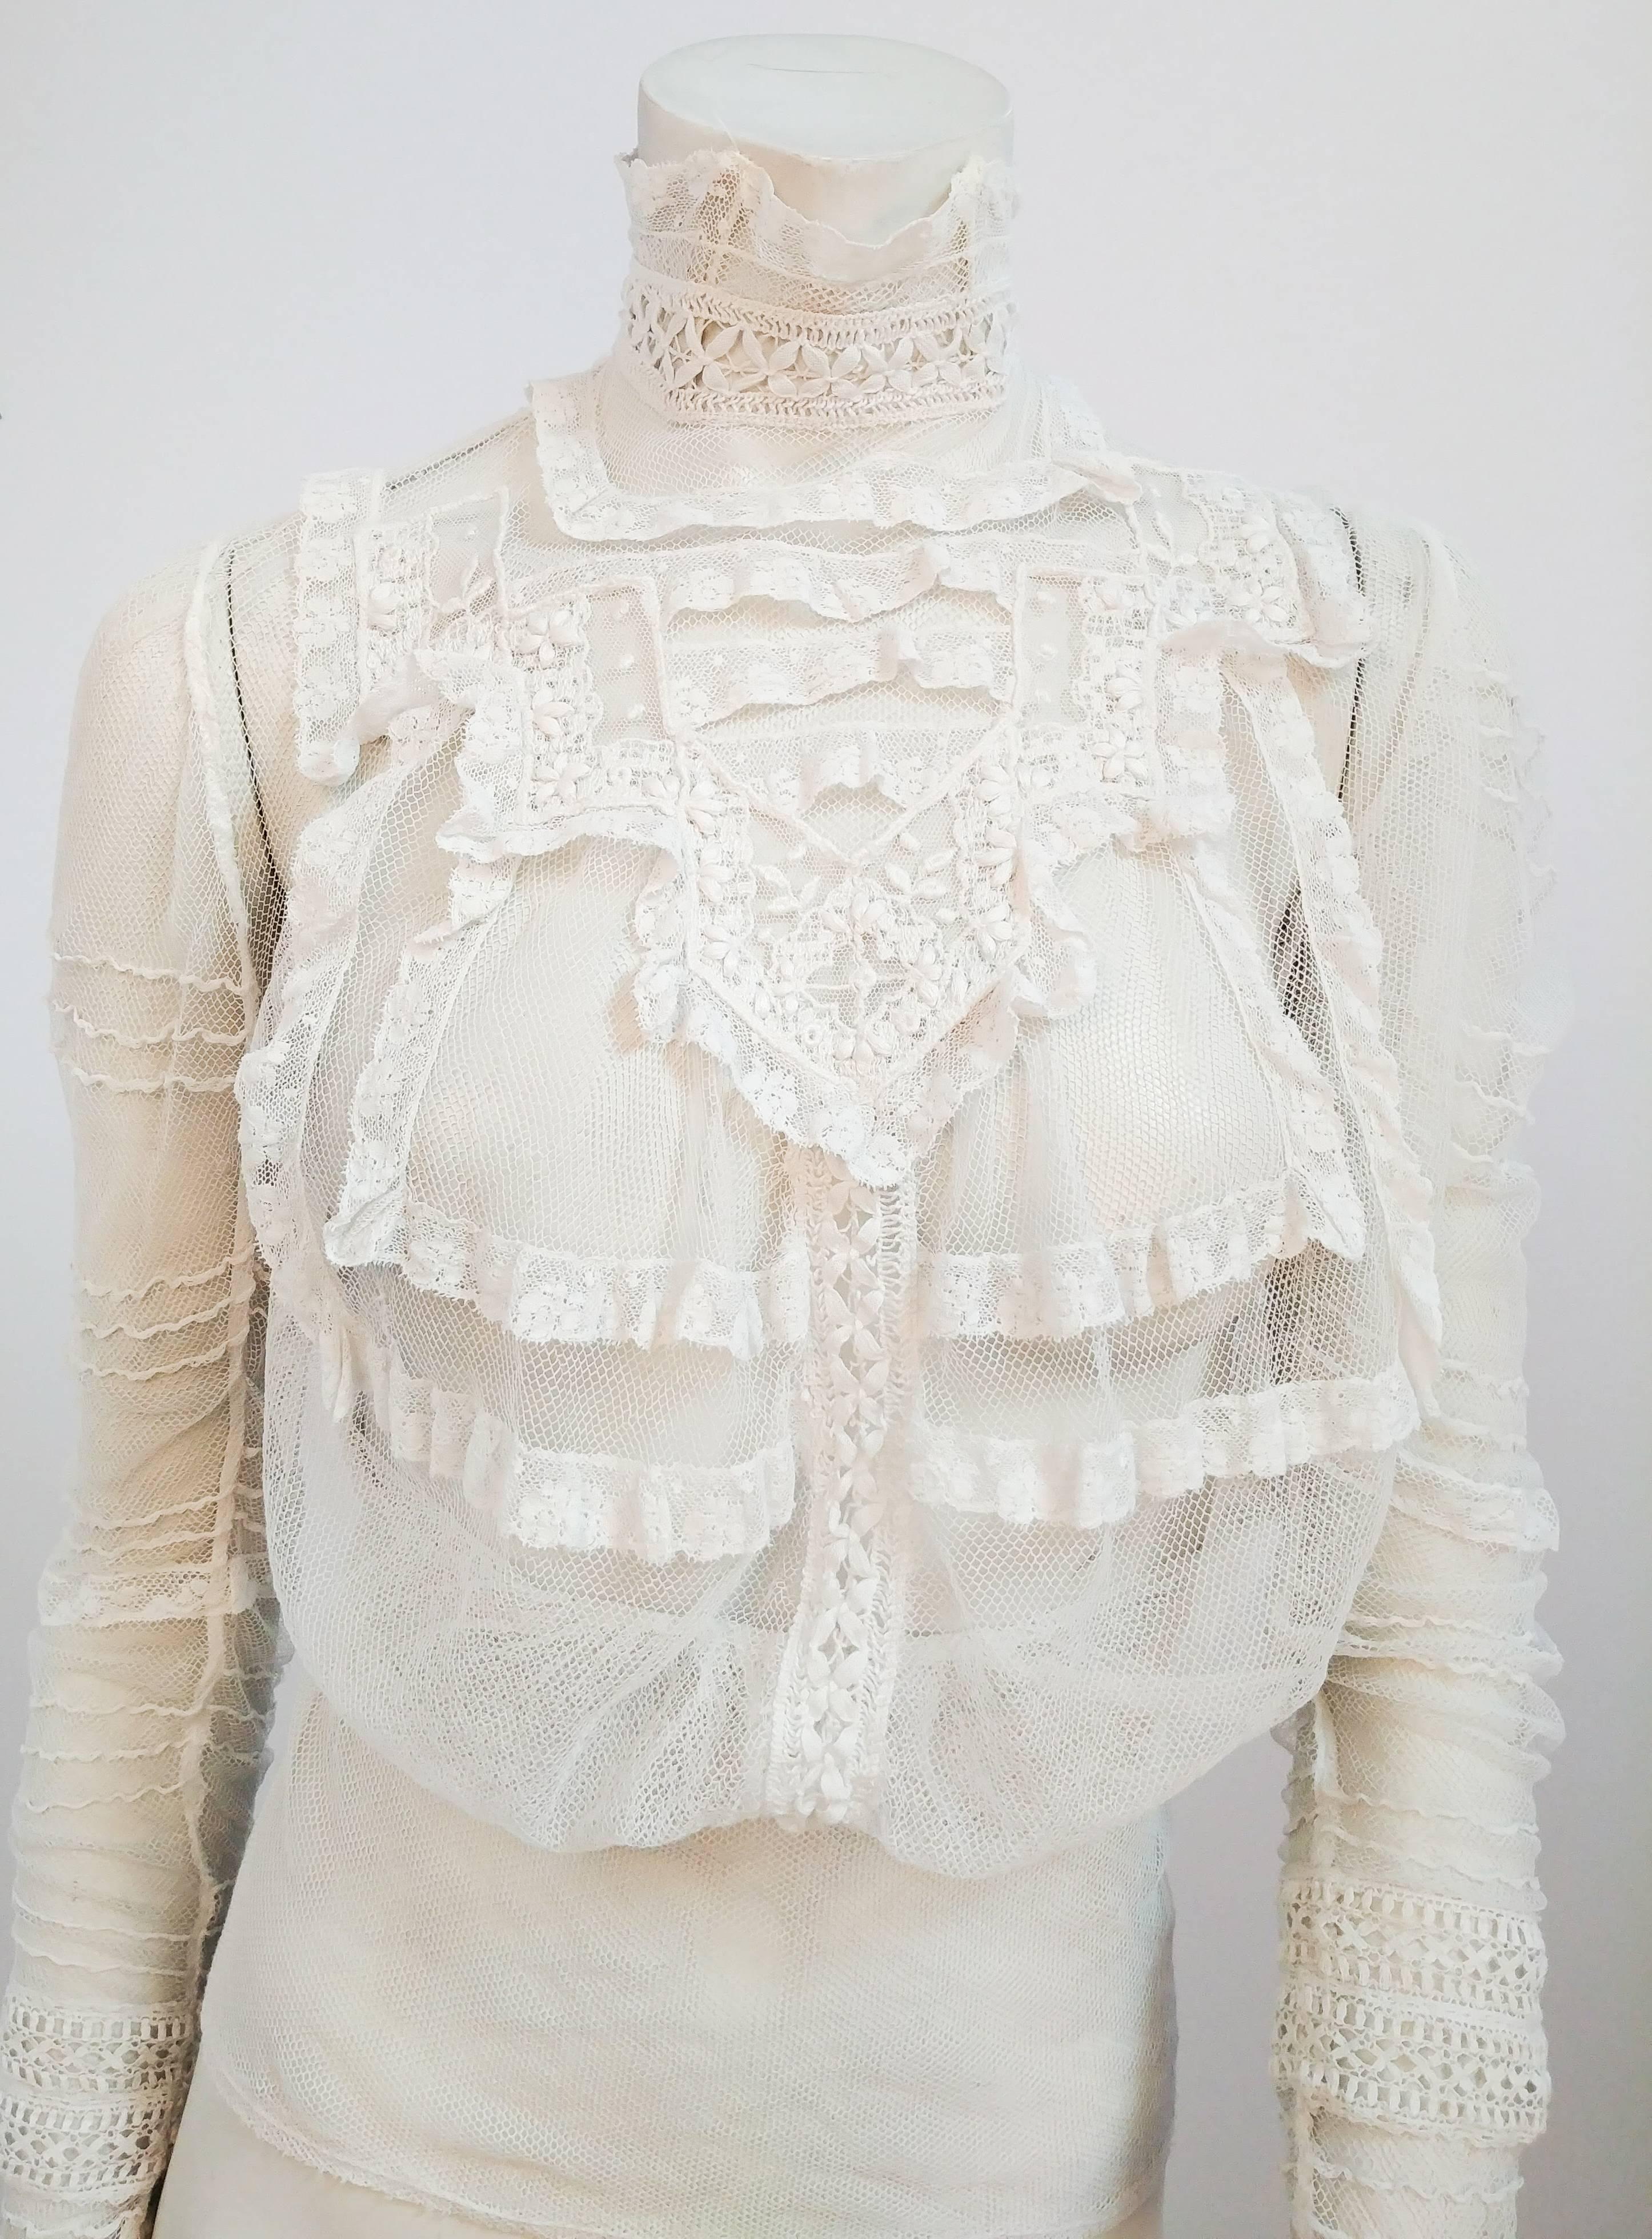 1900er Weiße Bluse aus durchsichtigem Netzstoff. Maschinelle Spitzenborte und handgefertigte Spannspitze